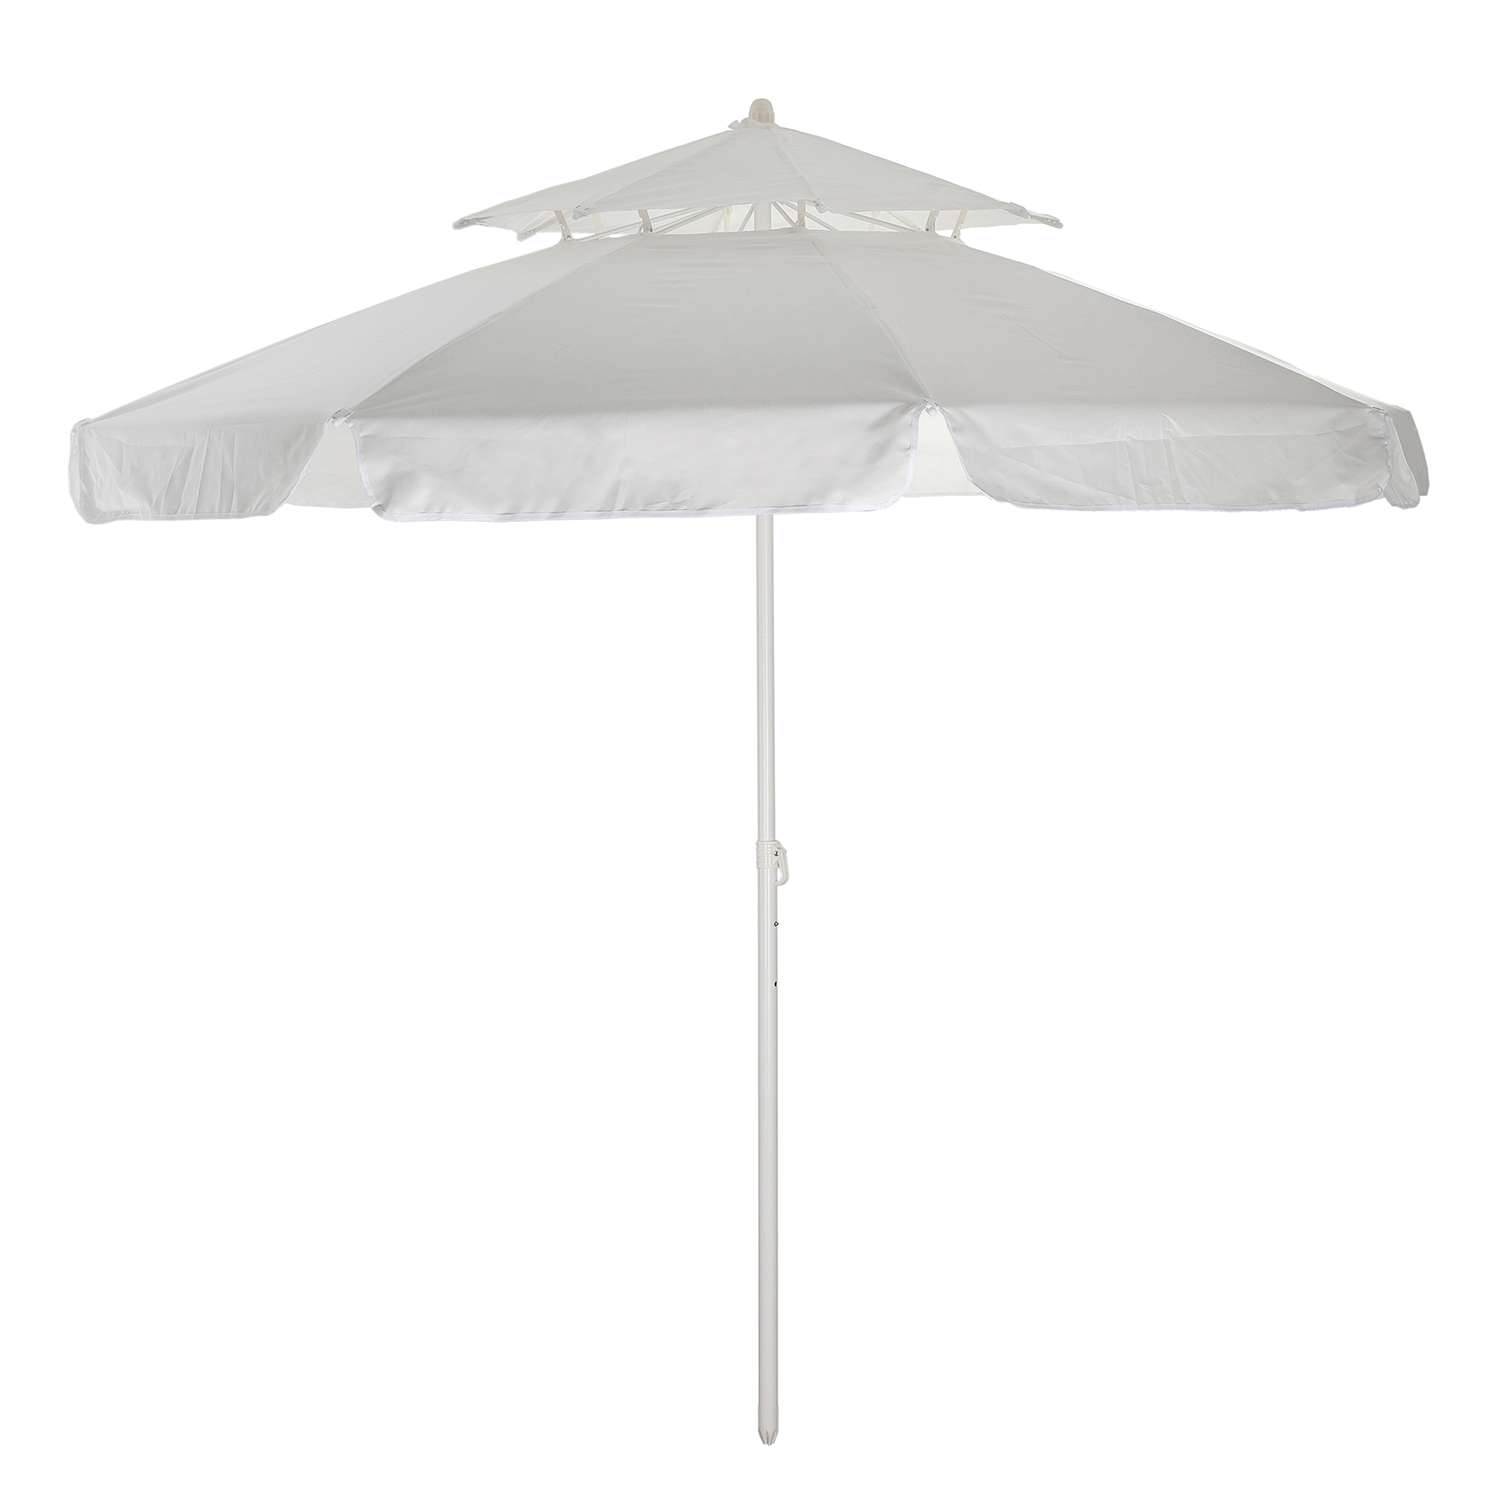 Зонт пляжный BABY STYLE большой от солнца садовый с двойным клапаном 2.7 м прямой белый - фото 1